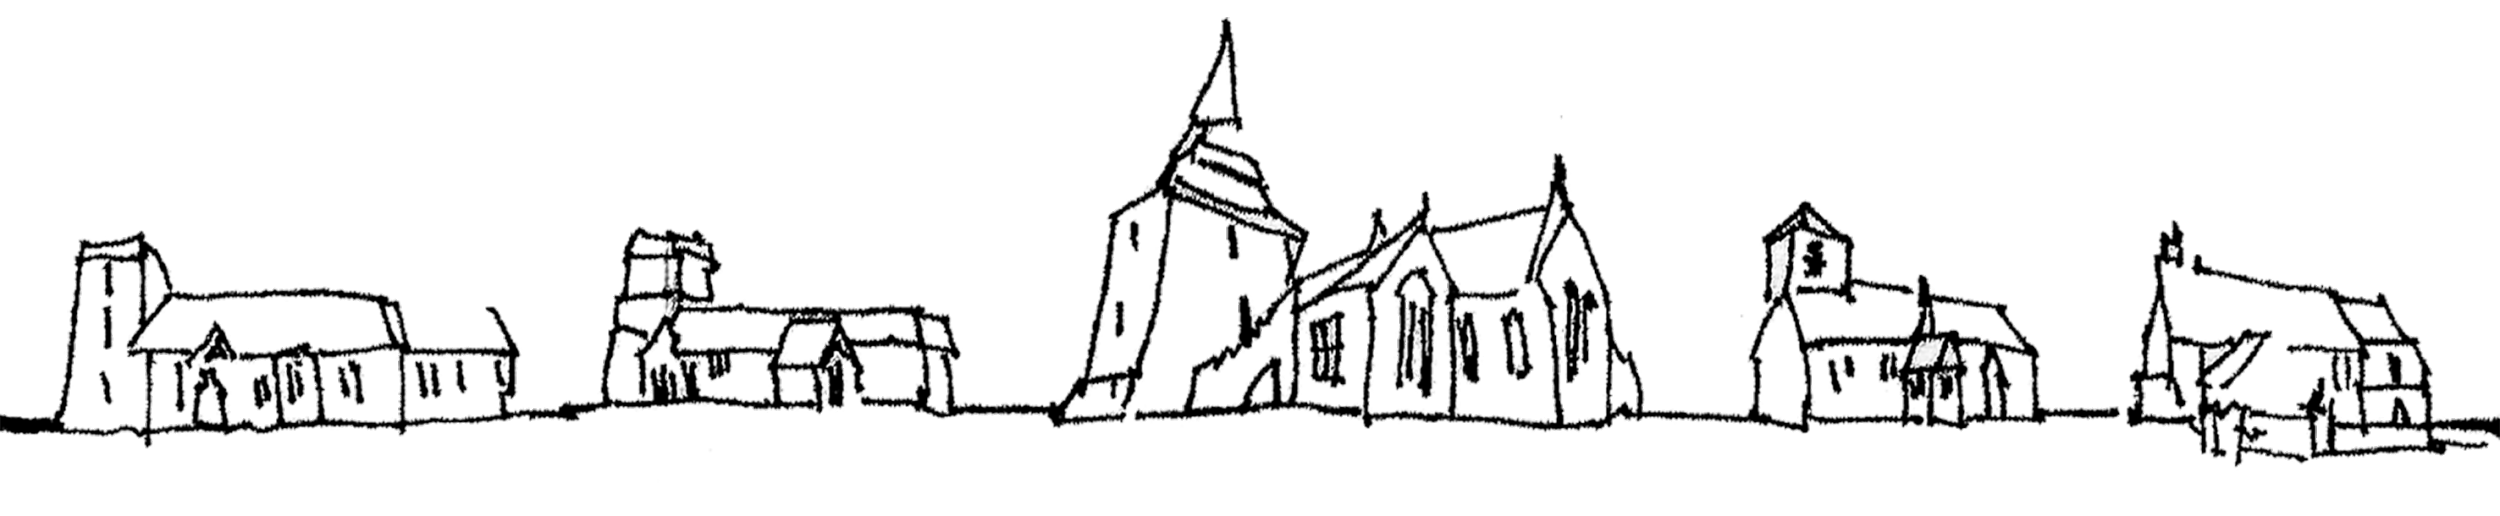 Kington Parishes